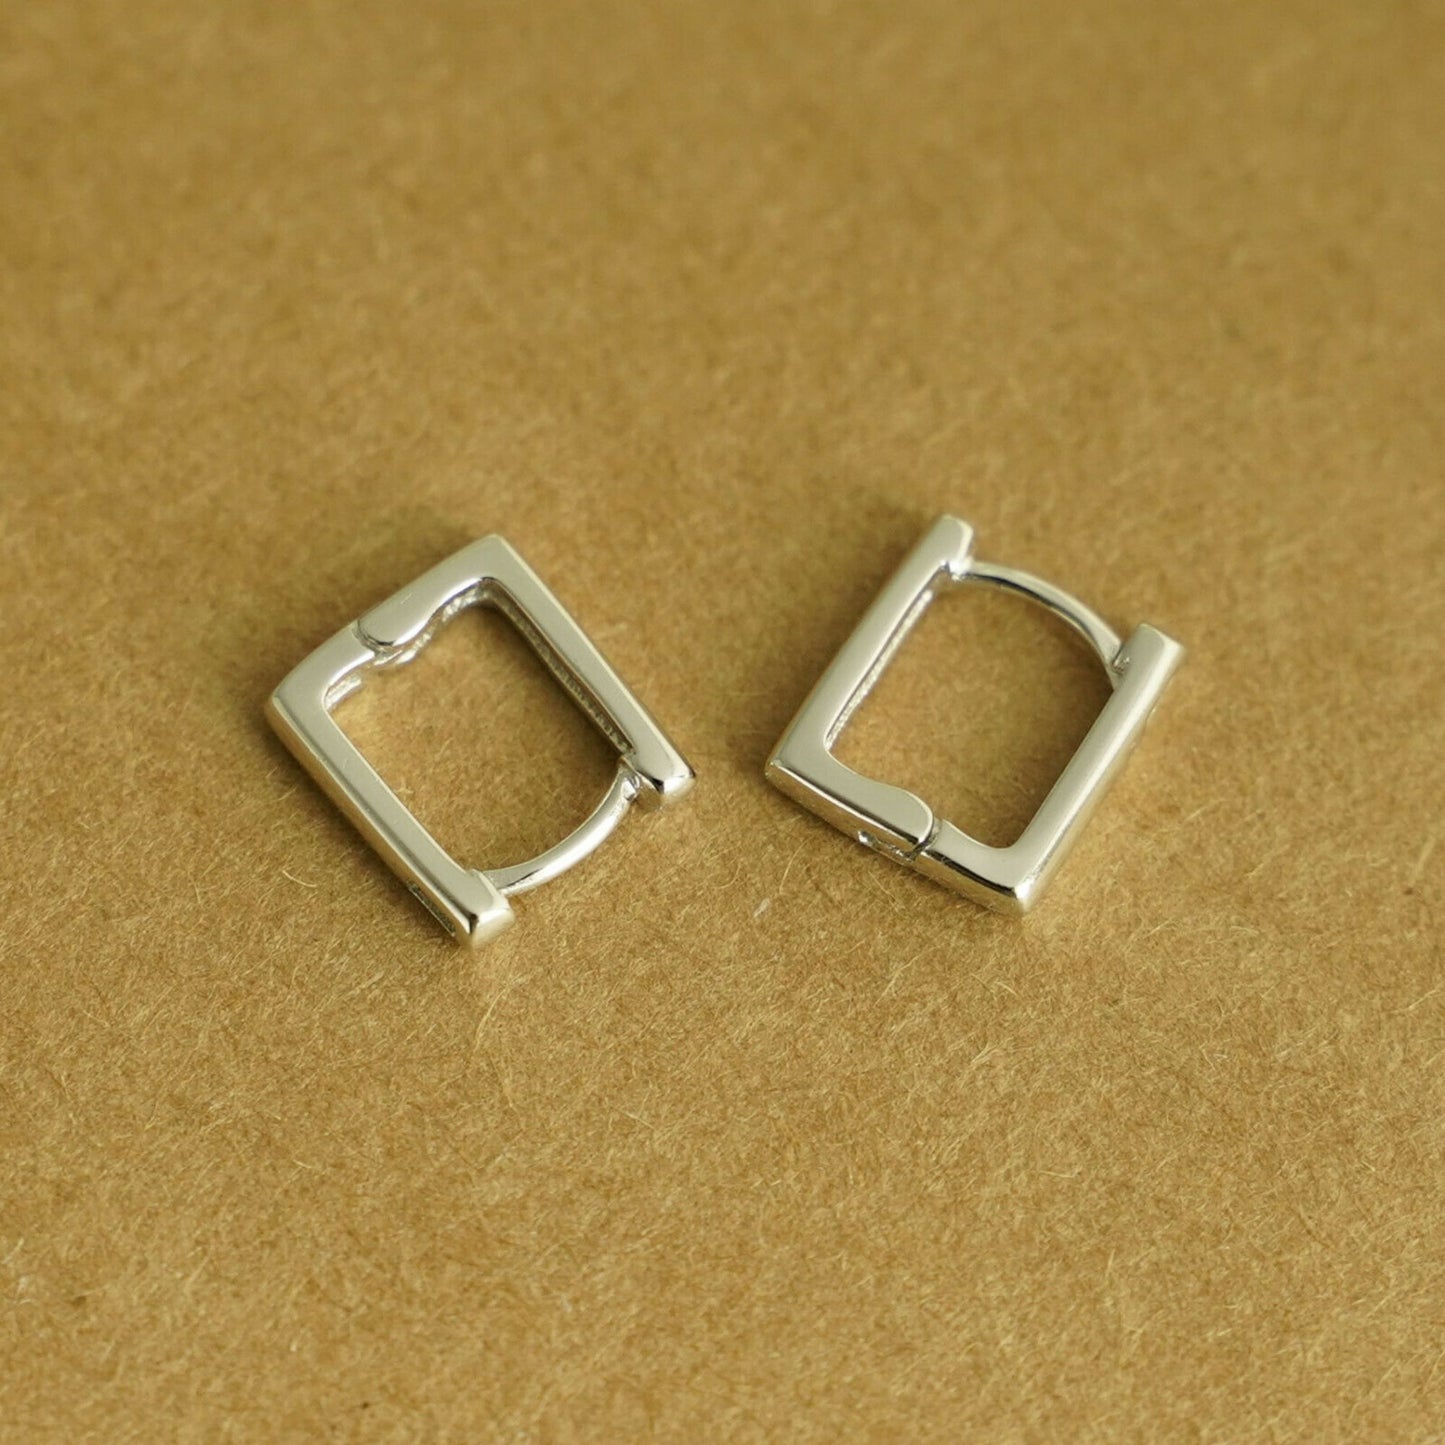 Square Hoop Huggie Earrings in Sterling Silver with Rhodium Plating